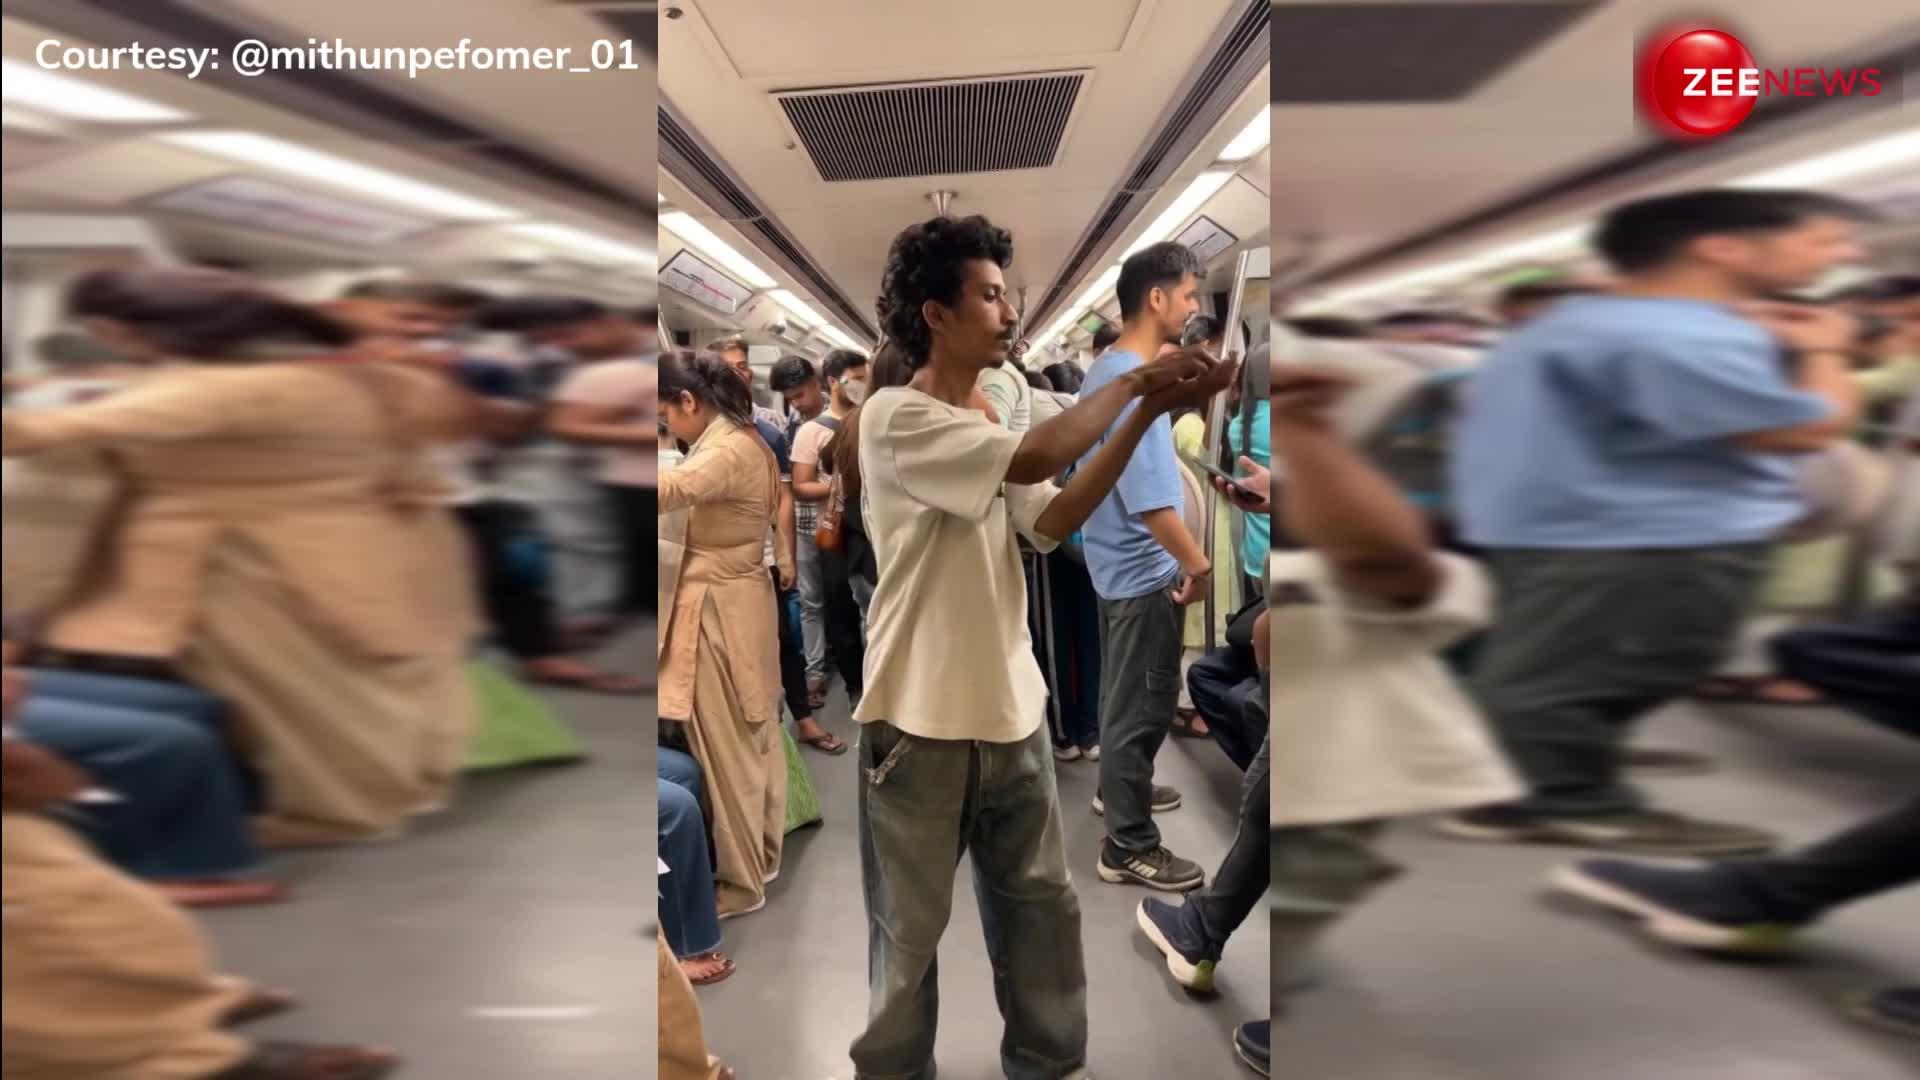 Metro में थिरकते हुए शख्स का वीडियो वायरल, तारीफ करने की जगह लोगों ने comments में कर दिया ट्रोल